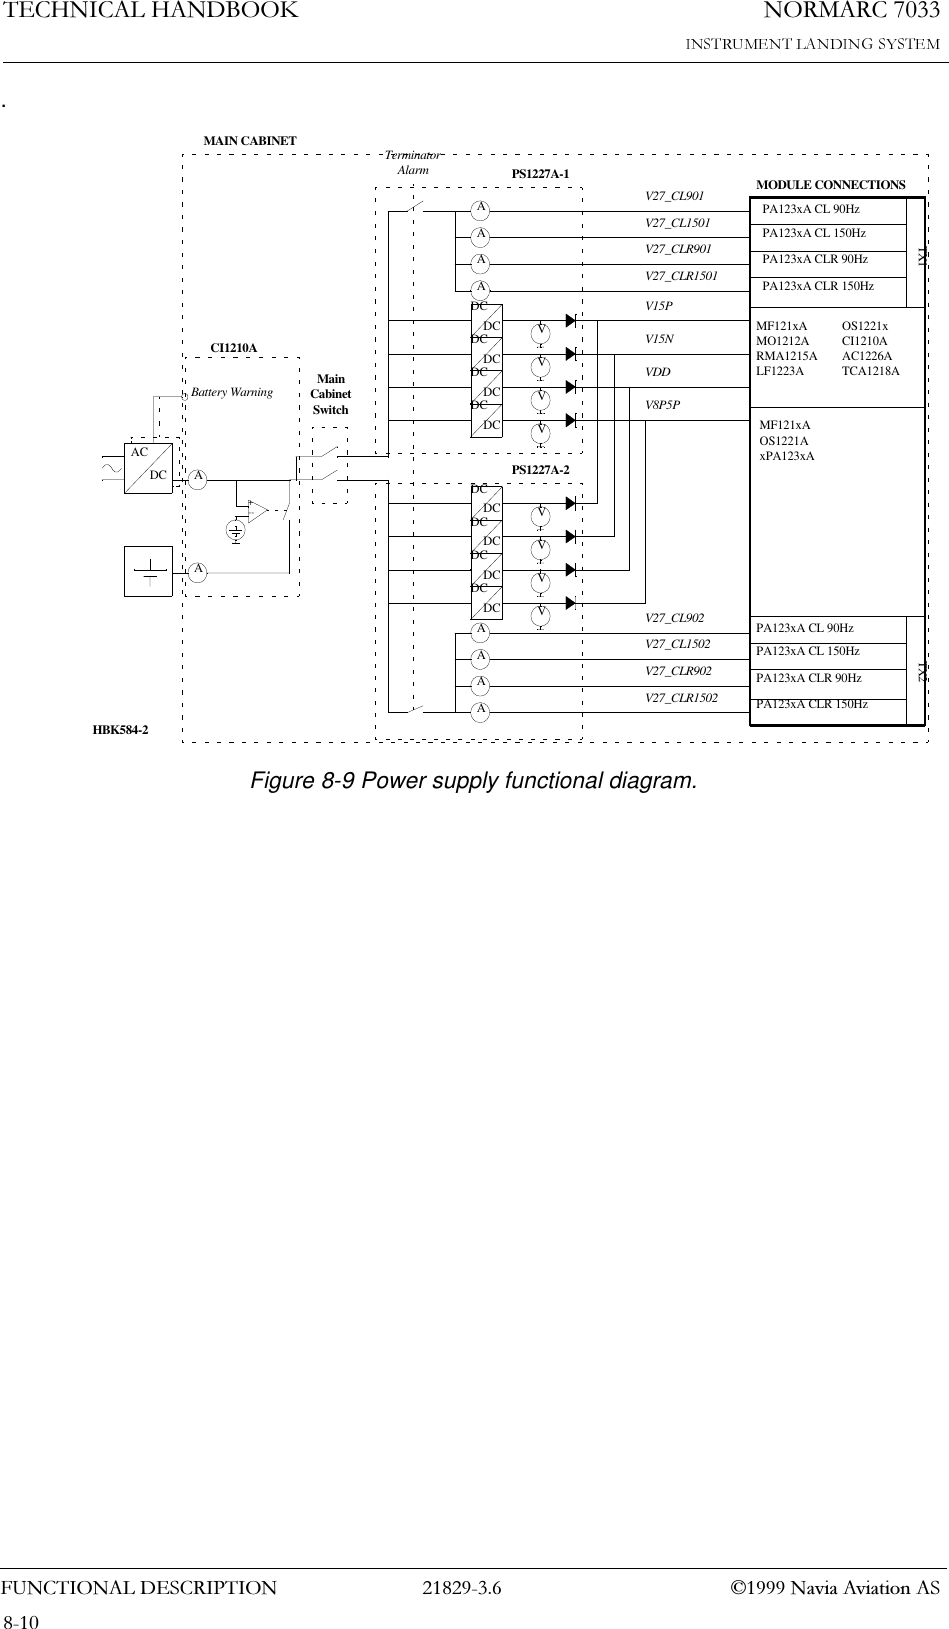 1250$5&amp;7(&amp;+1,&amp;$/+$1&apos;%22.)81&amp;7,21$/&apos;(6&amp;5,37,21  1DYLD$YLDWLRQ$6.Figure 8-9 Power supply functional diagram.AAACDCDCDCDCDCDCDCDCDCTerminatorAlarmDCDCDCDCDCDCDCDCMODULE CONNECTIONSTX1 TX2PA123xA CL 90HzPA123xA CL 150HzPA123xA CLR 90HzPA123xA CLR 150HzPA123xA CL 90HzPA123xA CL 150HzPA123xA CLR 90HzPA123xA CLR 150HzMF121xAMO1212ARMA1215ALF1223AOS1221xCI1210AAC1226ATCA1218AMainCabinetSwitchCI1210APS1227A-1PS1227A-2VVVVVVVV+--AAAAAAAABattery WarningV27_CL1501V27_CL901V27_CLR901V27_CLR1501V15PV15NVDDV8P5PV27_CL1502V27_CL902V27_CLR902V27_CLR1502MF121xAOS1221AxPA123xAMAIN CABINETHBK584-2